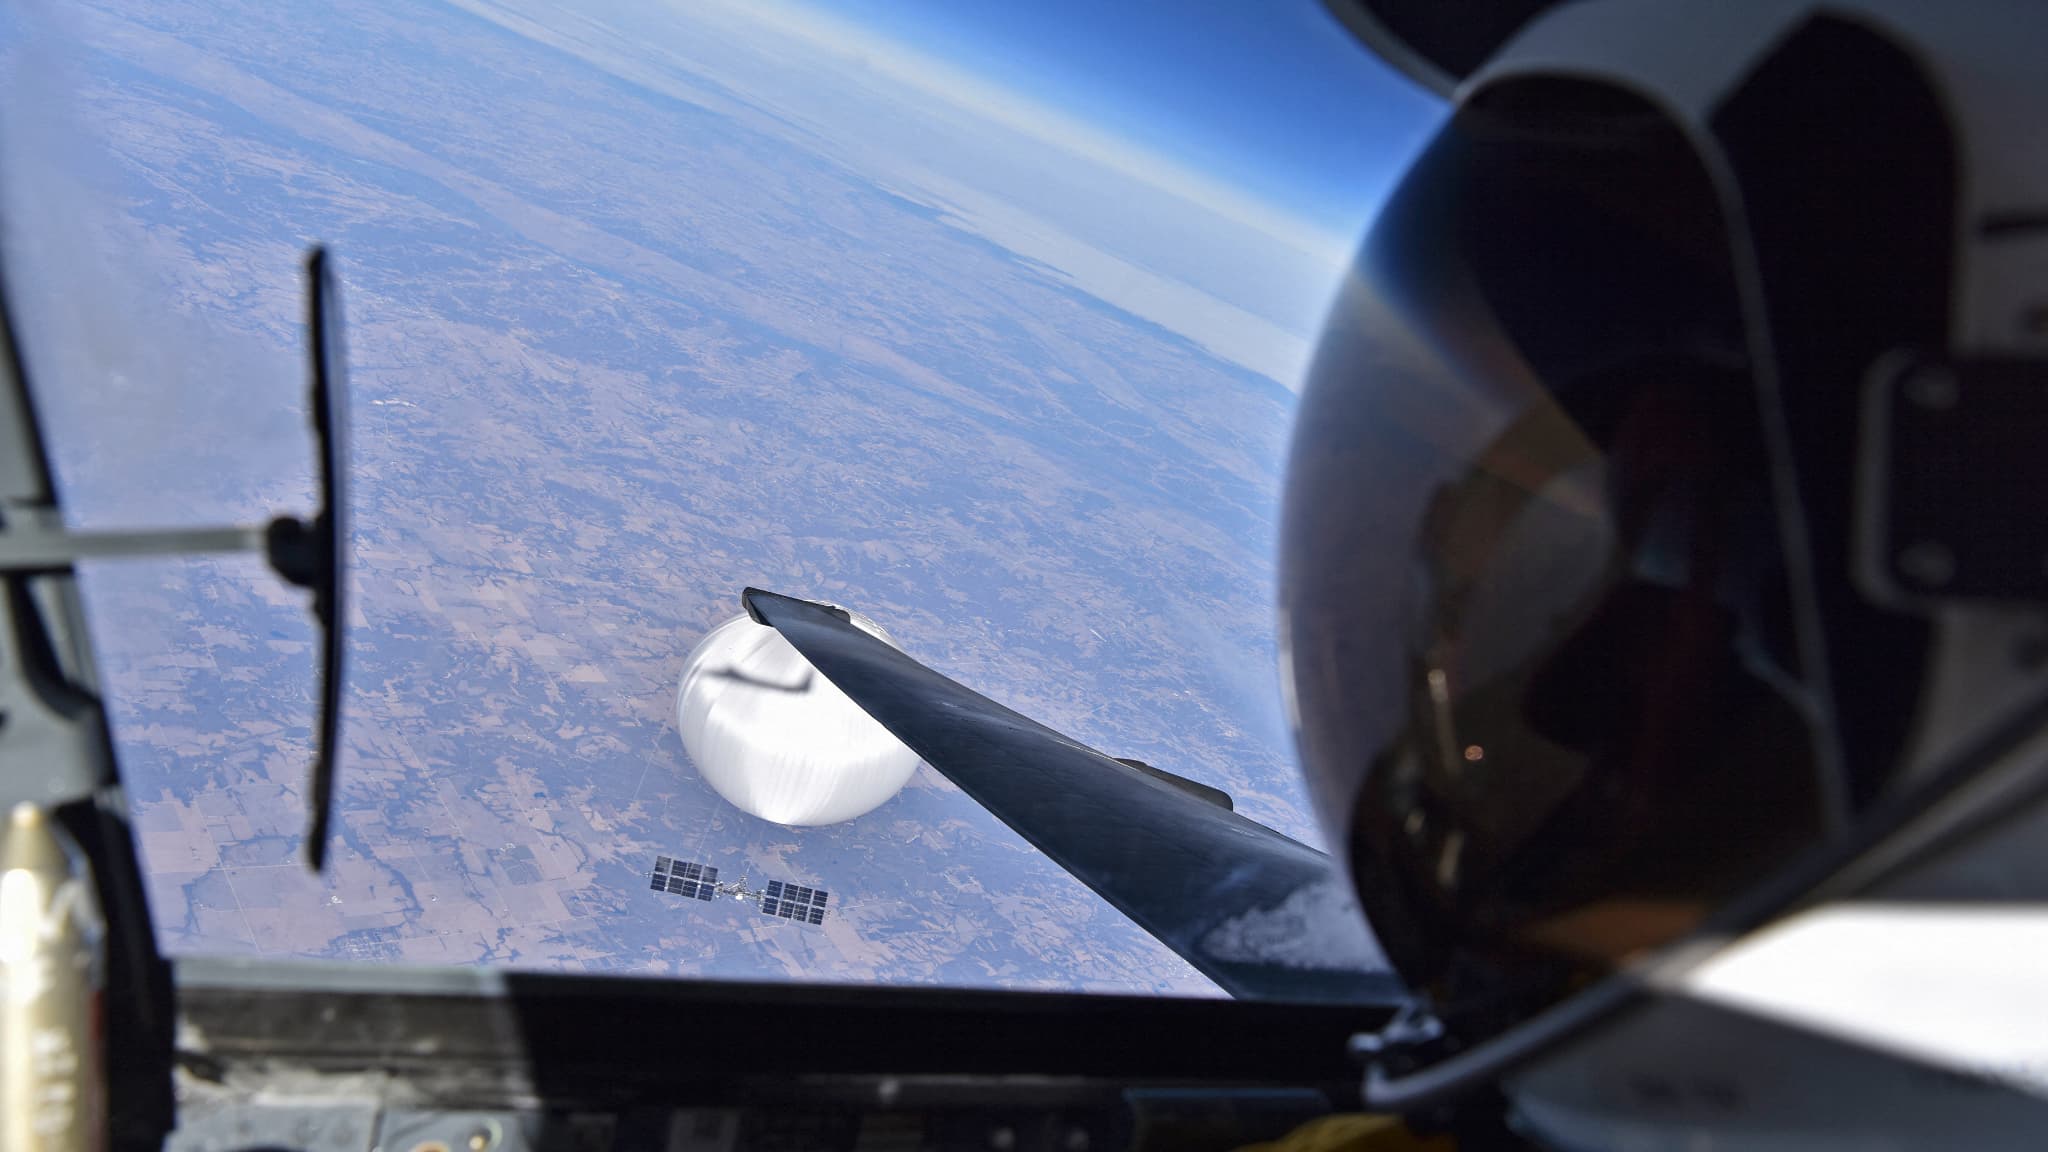 Washington pubblica una foto “leggendaria” di un pilota della US Air Force mentre si avvicina un pallone spia cinese